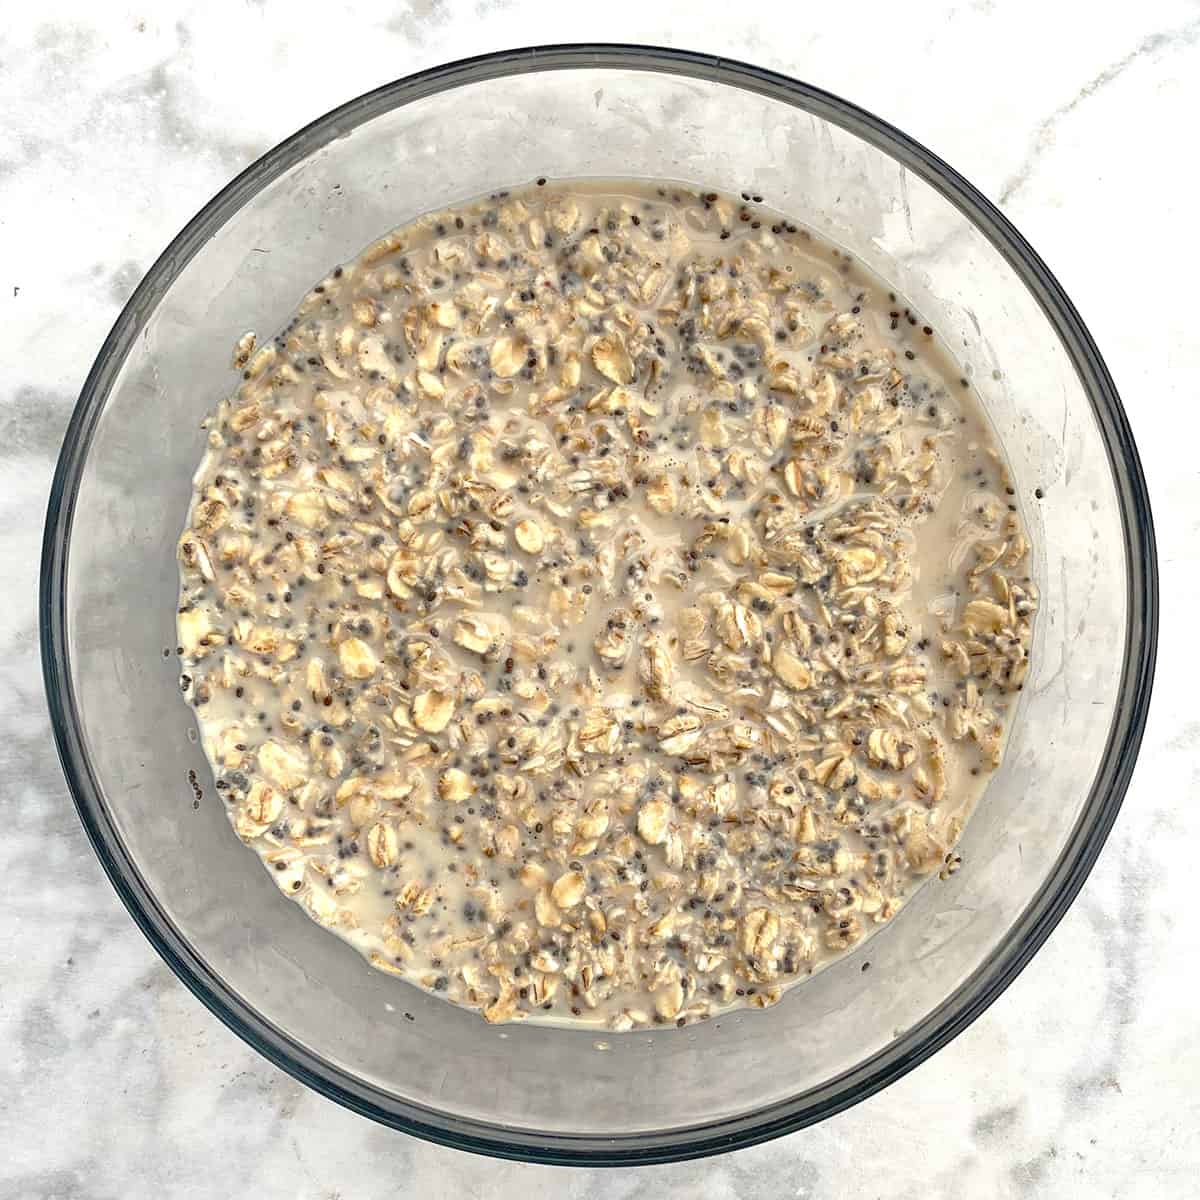 soaking overnight oats in glass jar.